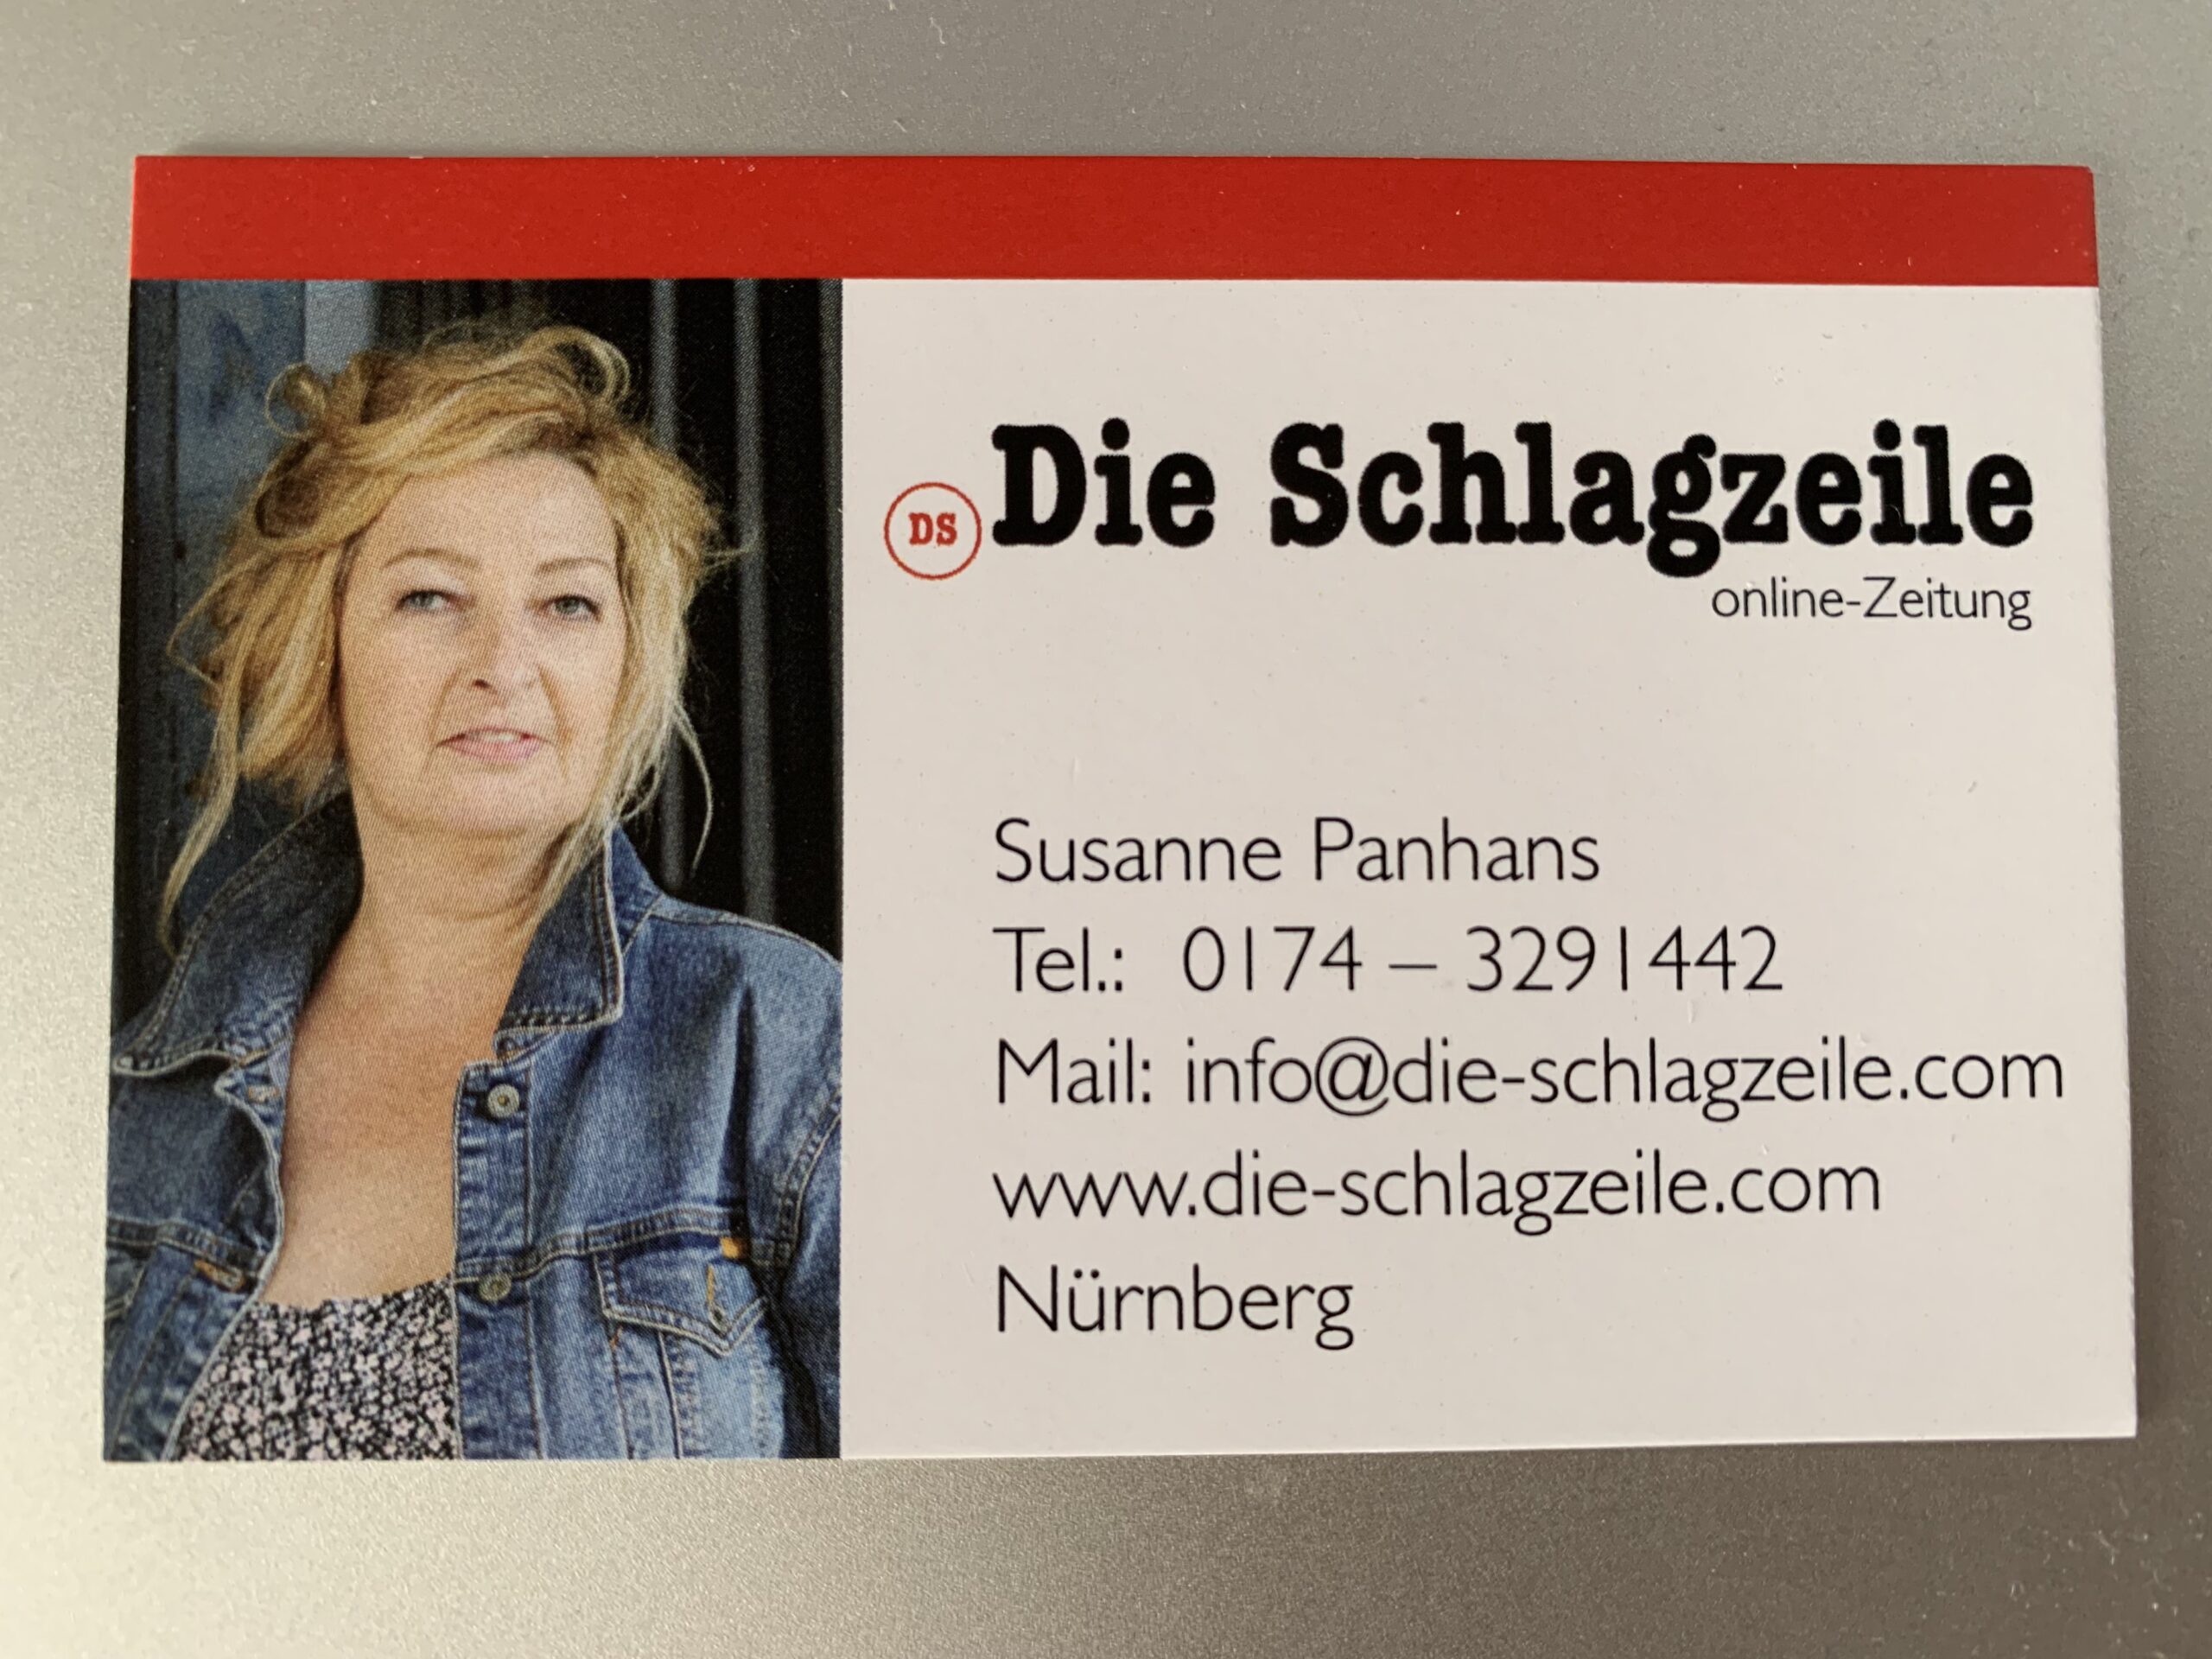 Online-Zeitung - Die-Schlagzeile.com - Susanne Panhans